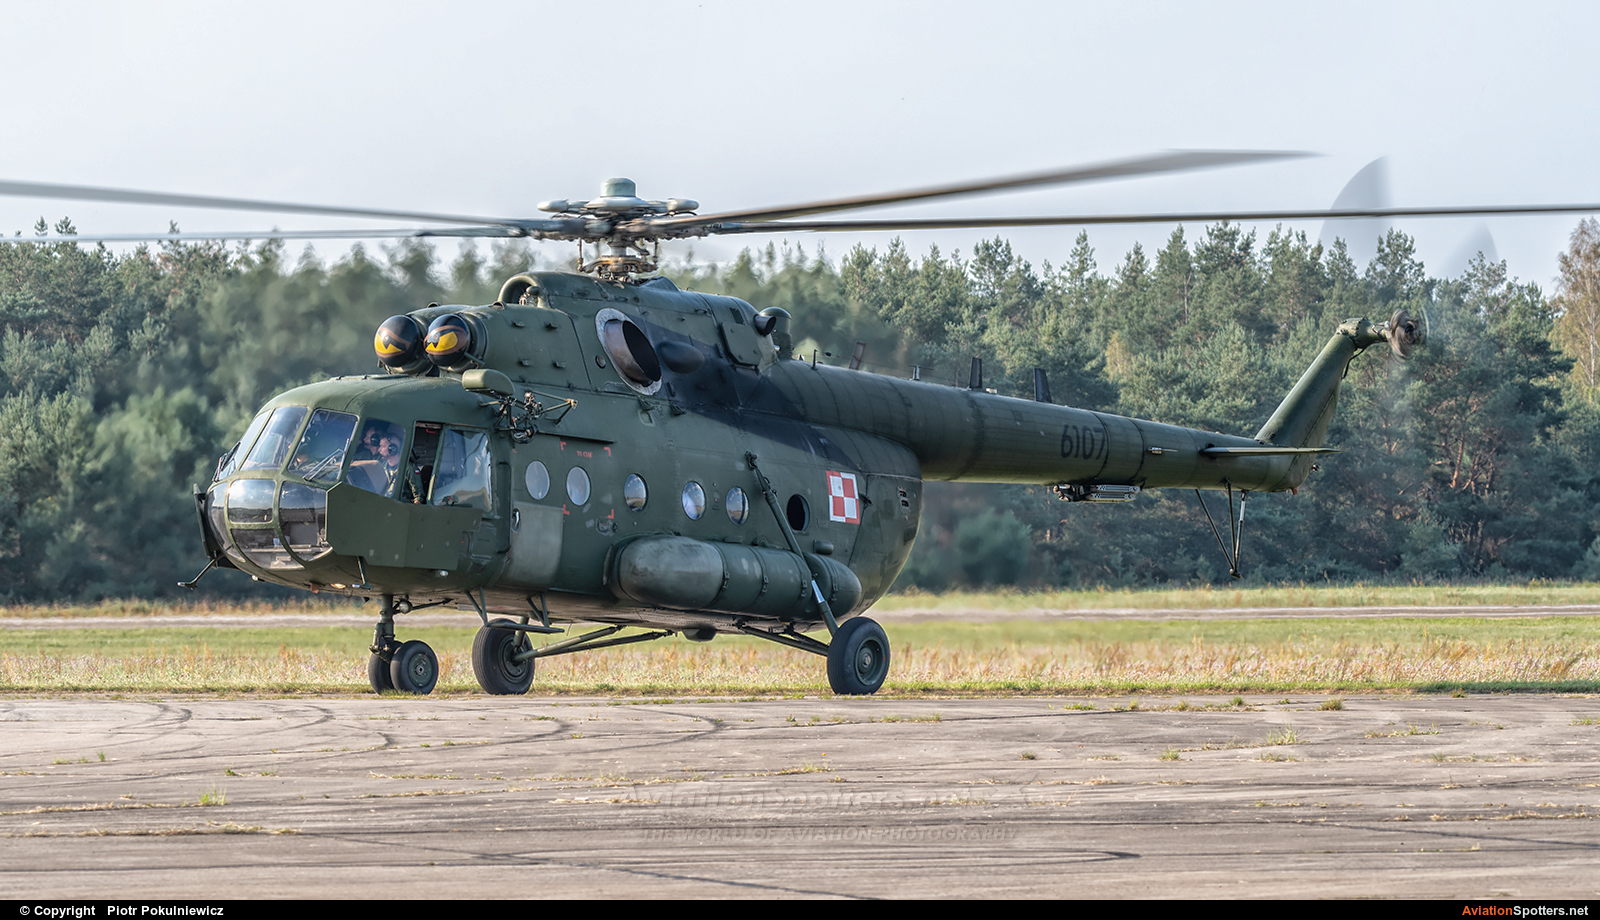   Mi-17  (6107) By Piotr Pokulniewicz (Piciu)